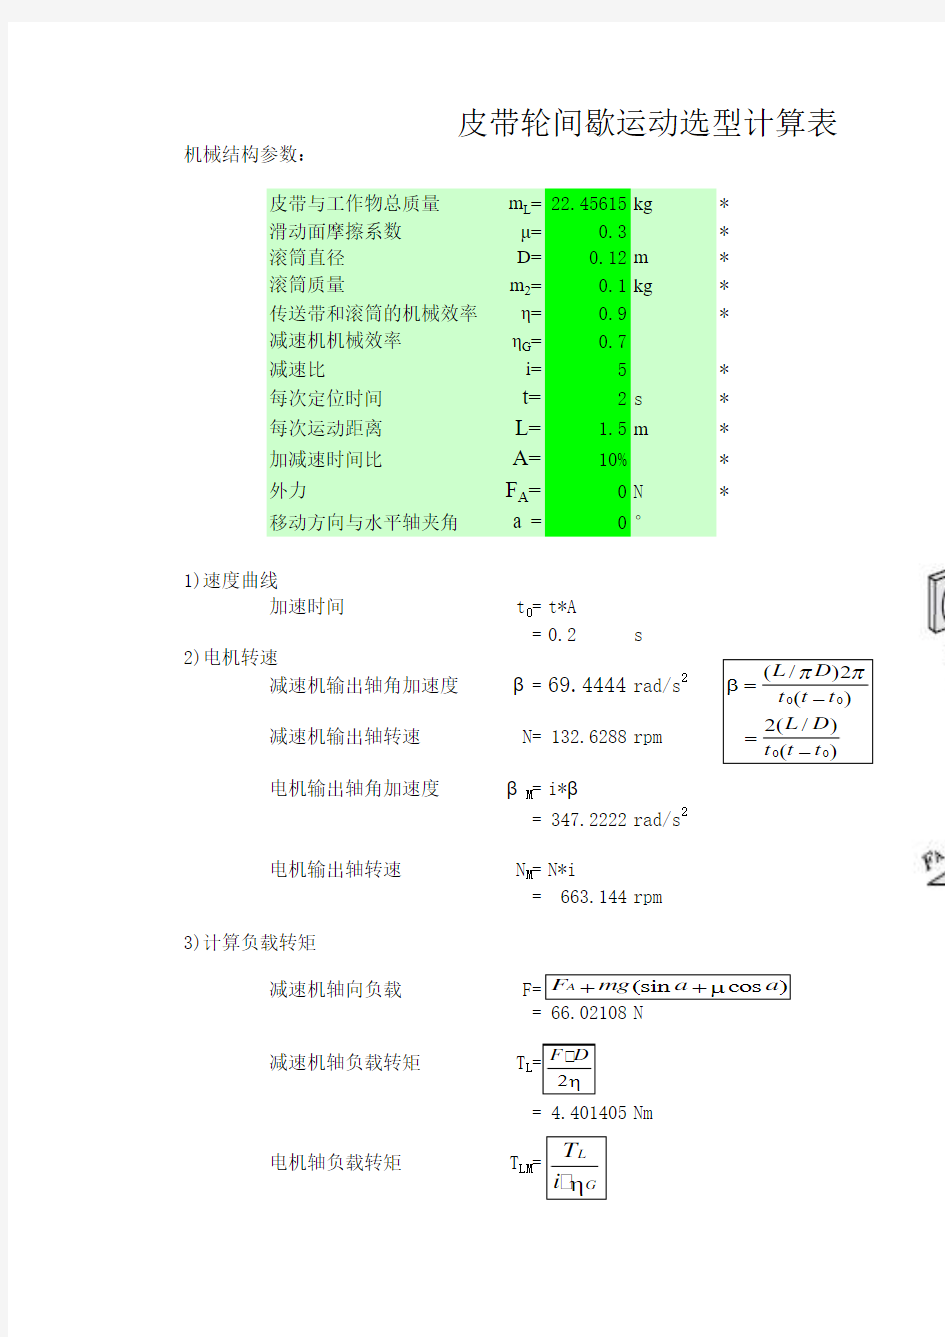 伺服电机及丝杠选型计算(自动表格计算)20140715